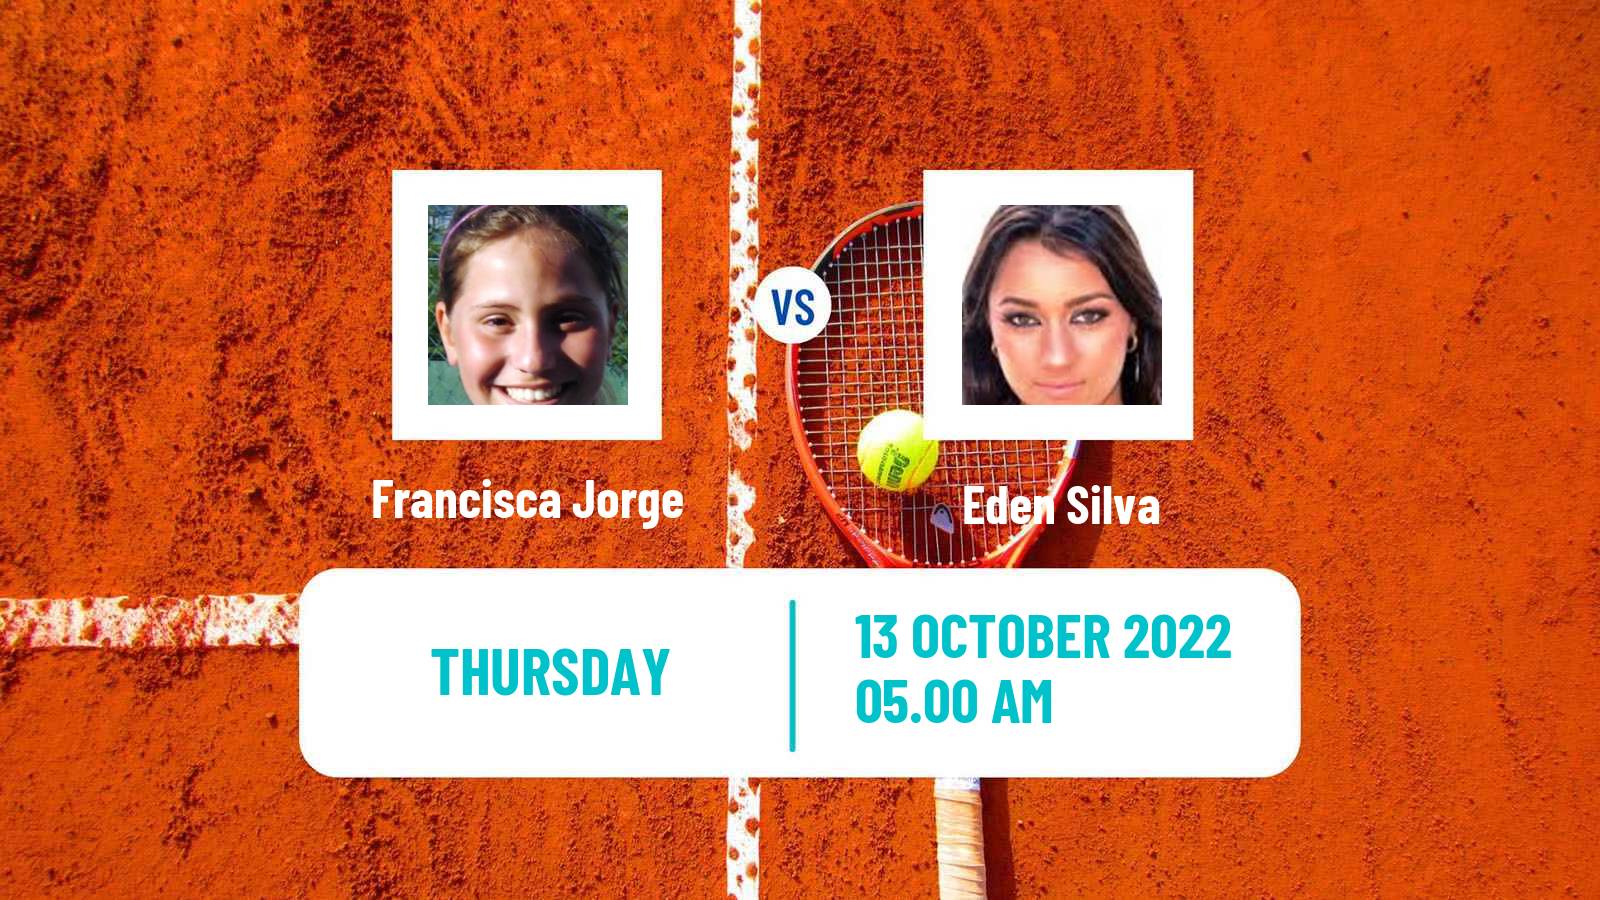 Tennis ITF Tournaments Francisca Jorge - Eden Silva